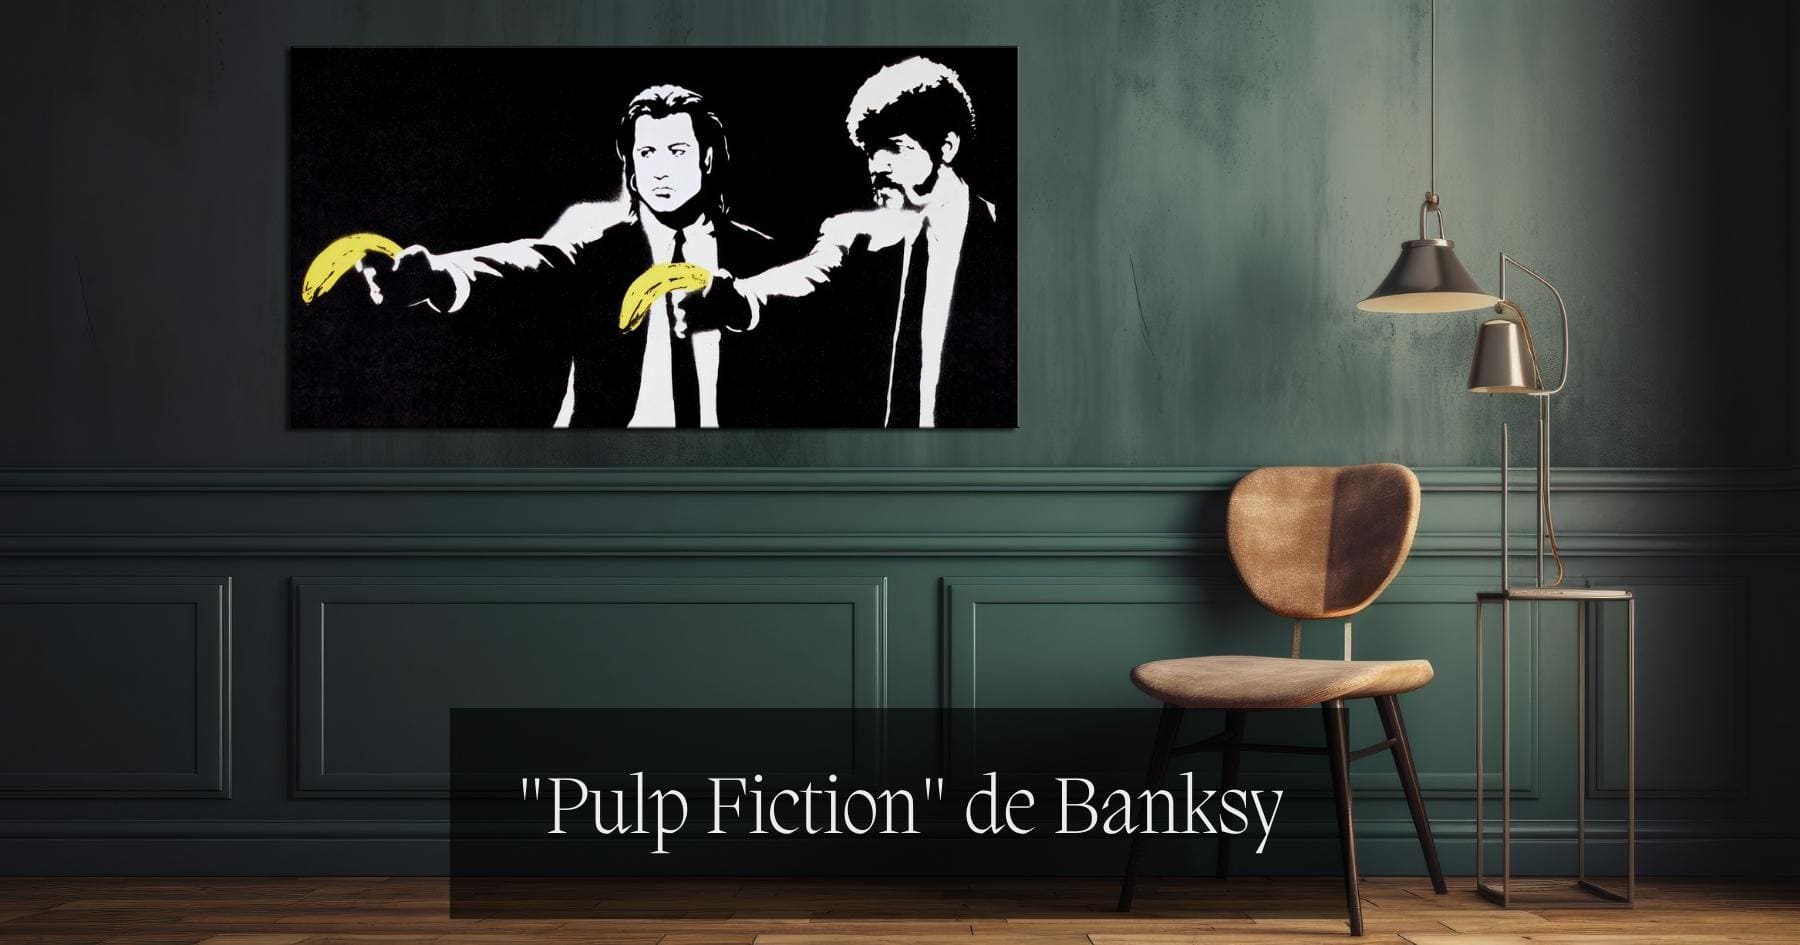 Tableau Street art "Pulp Fiction" de Banksy